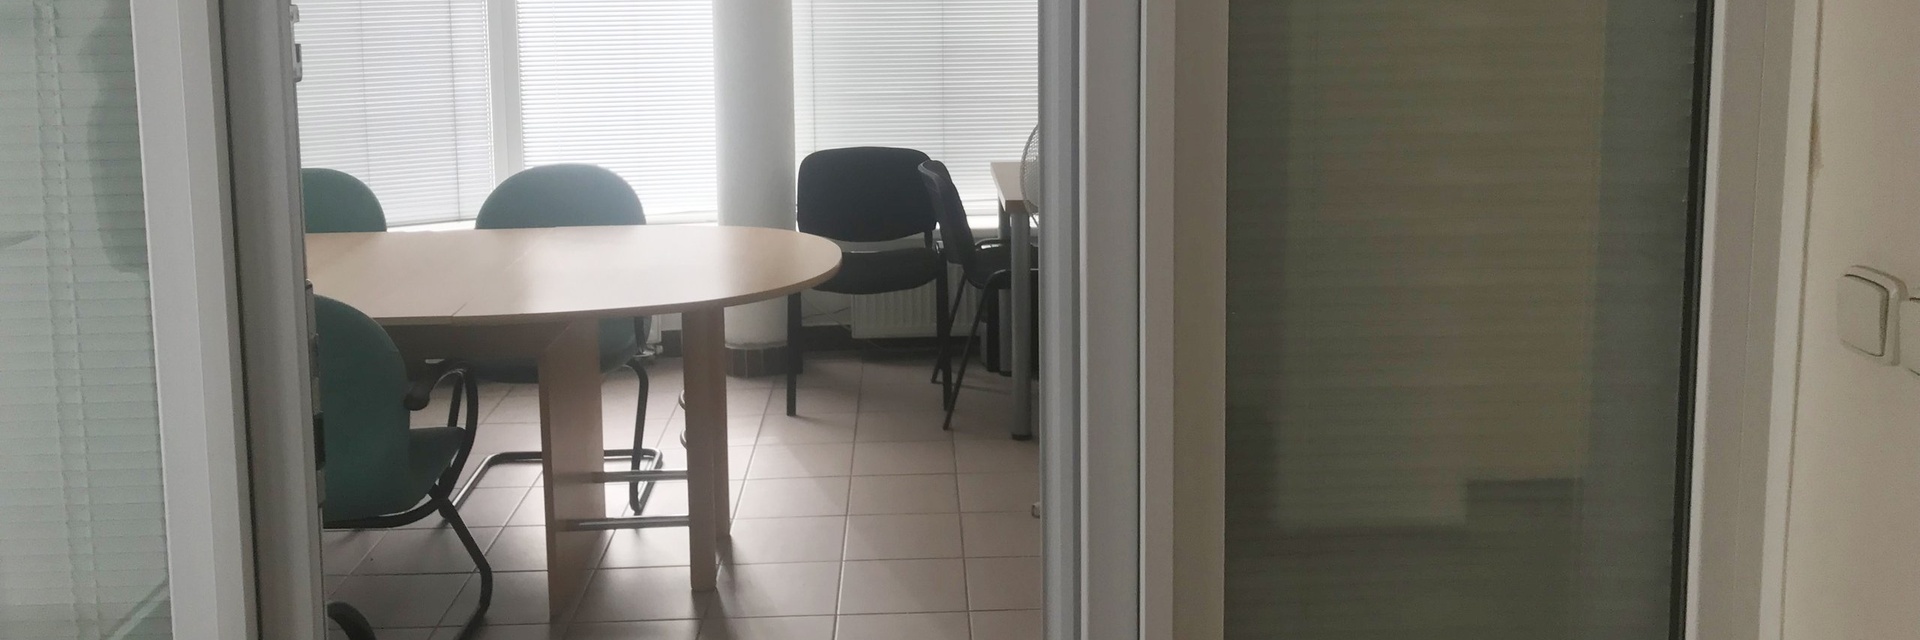 Pronájem kanceláří 61 m² v Brně u D1, ulice Bohunická